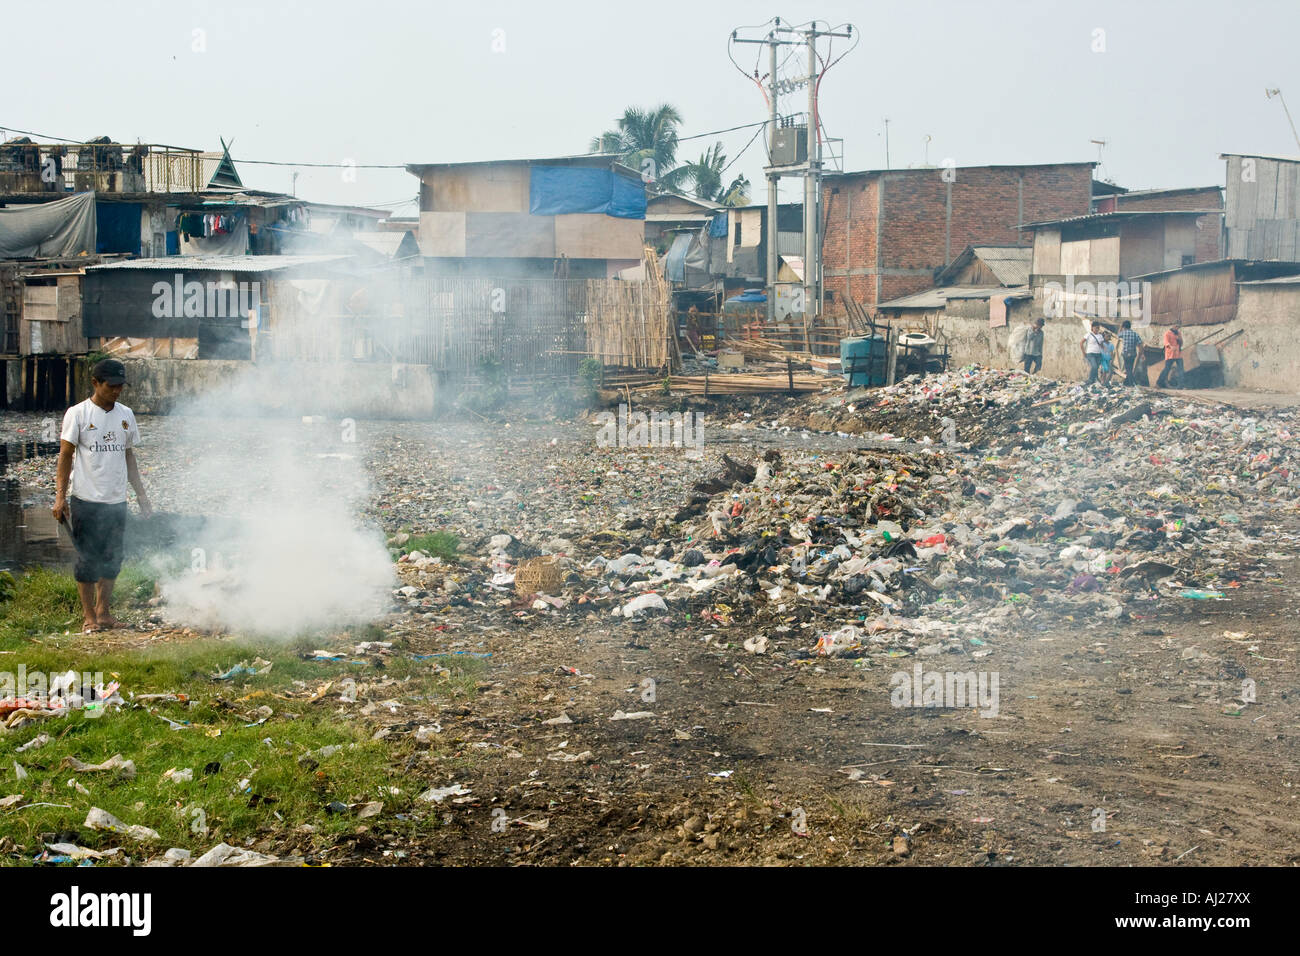 La combustion de déchets sur le tas d'ordures en bordure d'un quartier pauvre bidonville de Jakarta, Indonésie Banque D'Images